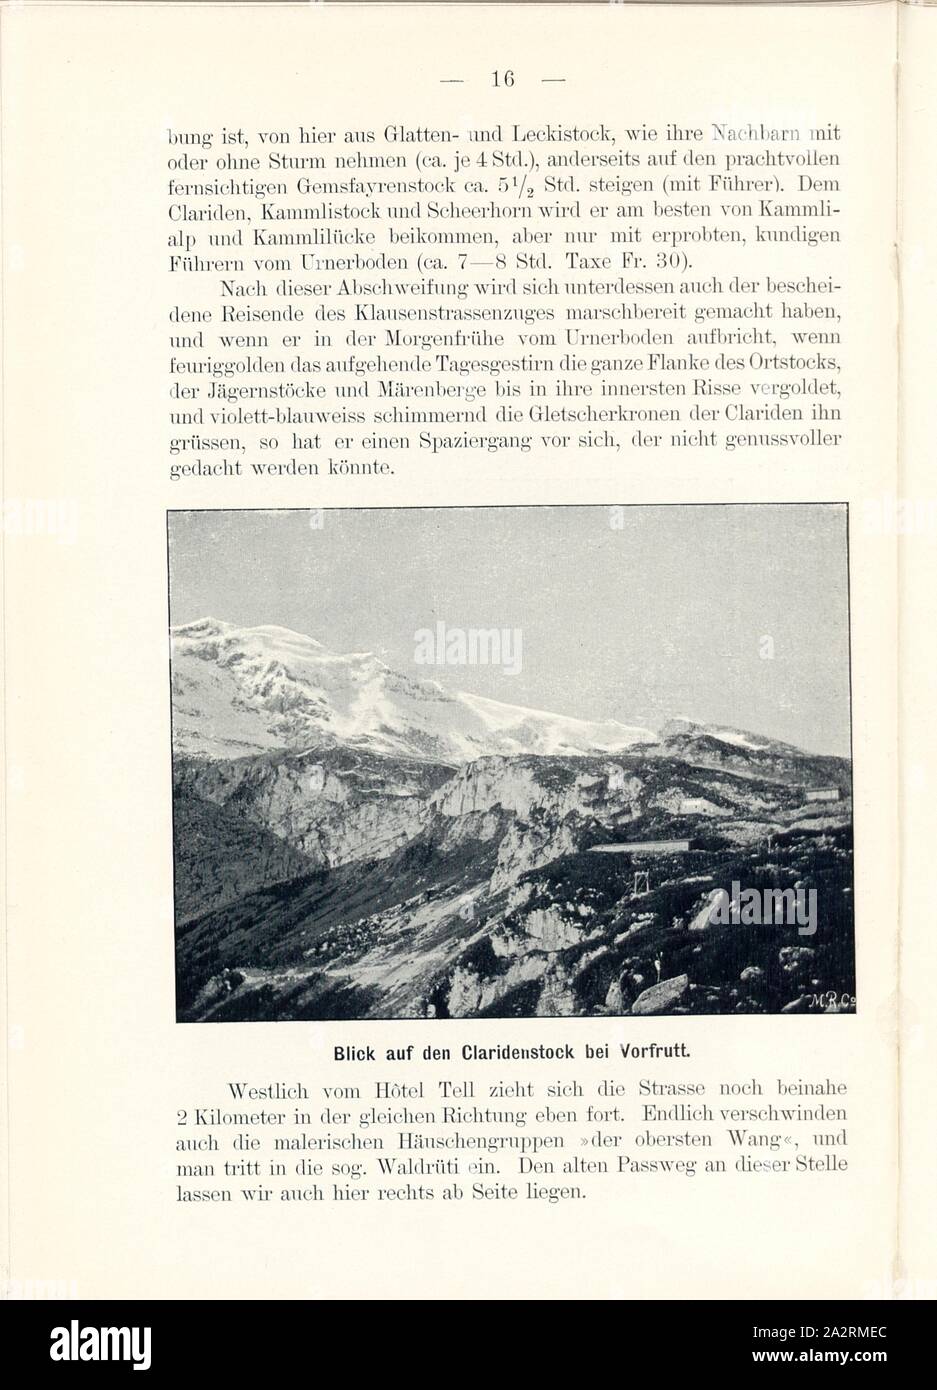 View of the Claridenstock at Vorfrutt, View from the Urnerboden in the canton of Uri, Signed: M.R.C, Fig. 14, p. 16, Meisenbach, Riffarth und Co. (imp.), 1900, J. Knobel: Illustrierter Reisebegleiter für die Alpenstrasse des Klausen und ihre Zufahrtslinien. Glarus: Buchdruckerei J. Spälti, 1900 Stock Photo